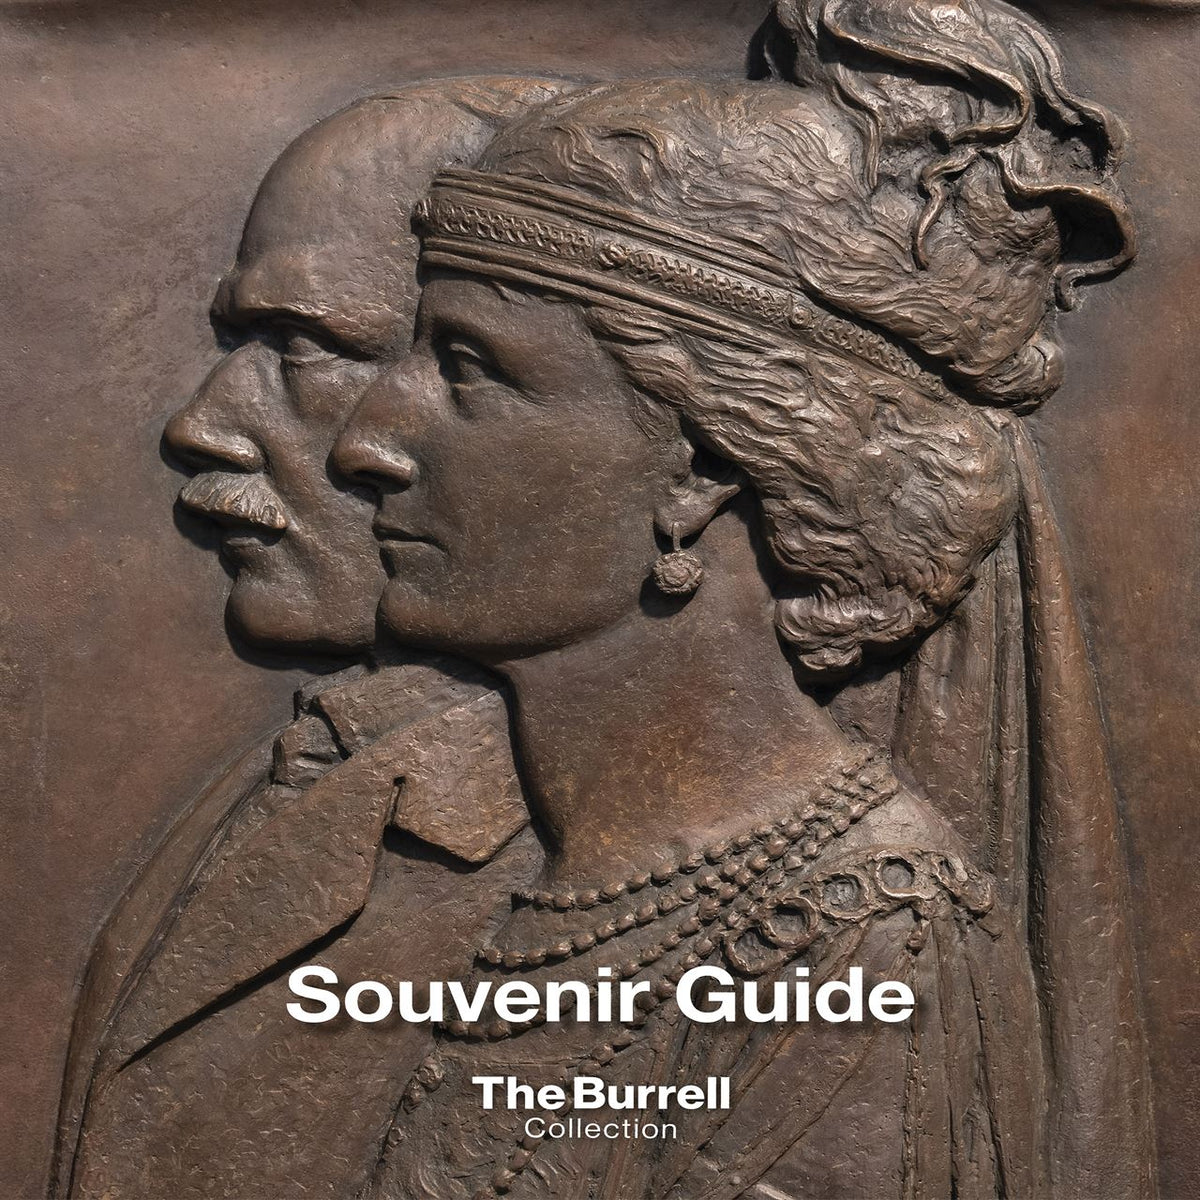 The Burrell Collection: A Souvenir Guide